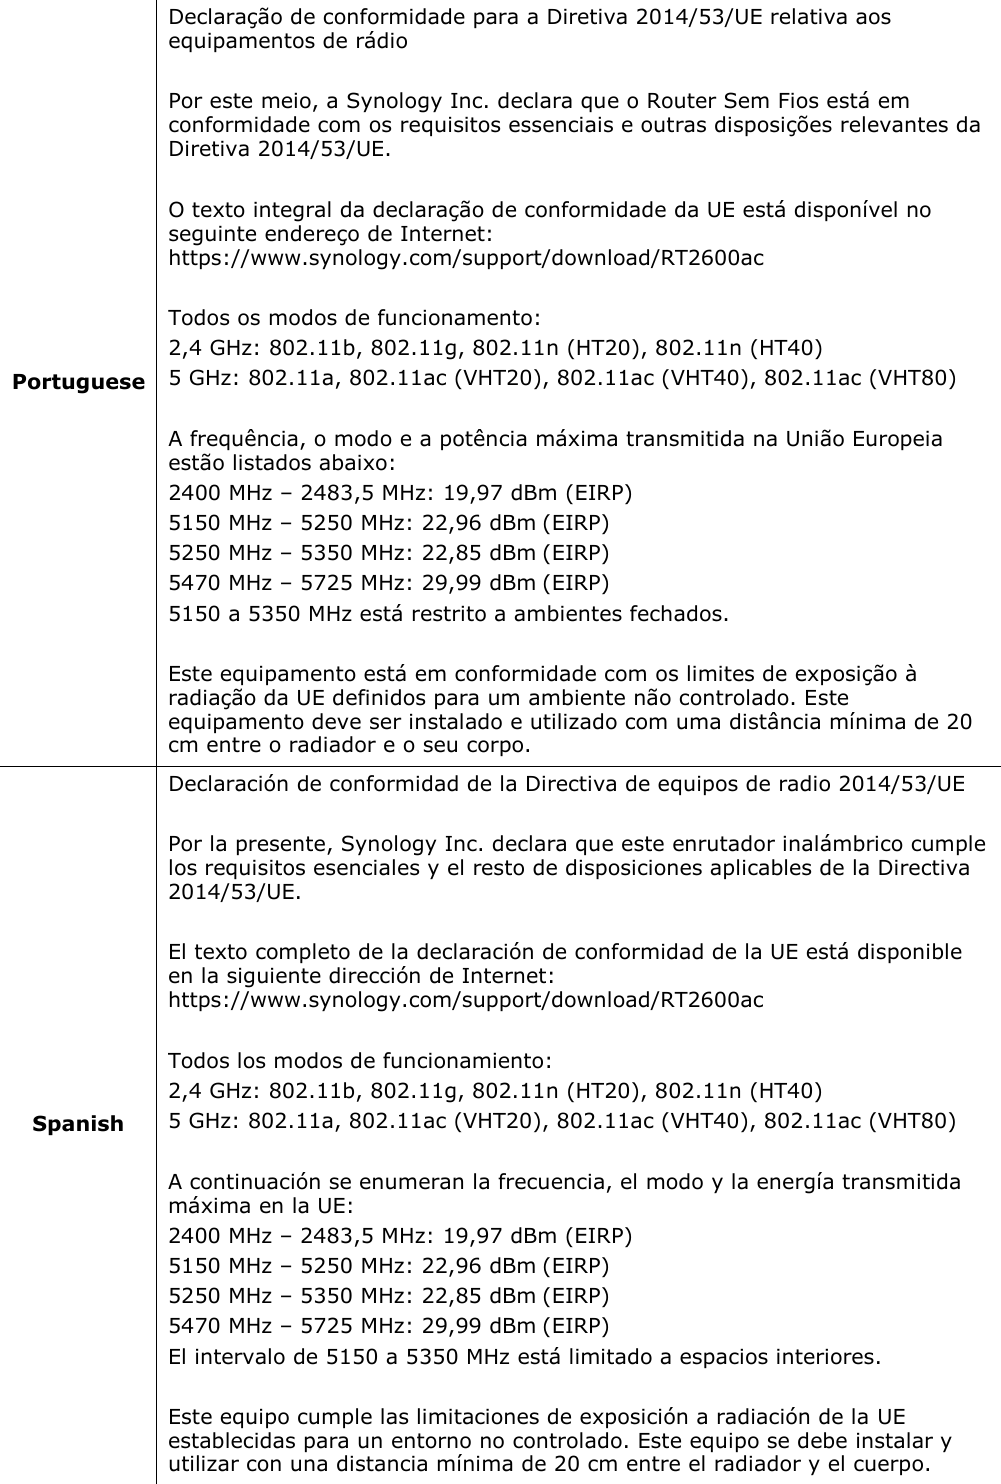             Portuguese Declaração de conformidade para a Diretiva 2014/53/UE relativa aos equipamentos de rádio  Por este meio, a Synology Inc. declara que o Router Sem Fios está em conformidade com os requisitos essenciais e outras disposições relevantes da Diretiva 2014/53/UE.  O texto integral da declaração de conformidade da UE está disponível no seguinte endereço de Internet: https://www.synology.com/support/download/RT2600ac  Todos os modos de funcionamento: 2,4 GHz: 802.11b, 802.11g, 802.11n (HT20), 802.11n (HT40) 5 GHz: 802.11a, 802.11ac (VHT20), 802.11ac (VHT40), 802.11ac (VHT80)  A frequência, o modo e a potência máxima transmitida na União Europeia estão listados abaixo: 2400 MHz – 2483,5 MHz: 19,97 dBm (EIRP) 5150 MHz – 5250 MHz: 22,96 dBm (EIRP) 5250 MHz – 5350 MHz: 22,85 dBm (EIRP) 5470 MHz – 5725 MHz: 29,99 dBm (EIRP) 5150 a 5350 MHz está restrito a ambientes fechados.  Este equipamento está em conformidade com os limites de exposição à radiação da UE definidos para um ambiente não controlado. Este equipamento deve ser instalado e utilizado com uma distância mínima de 20 cm entre o radiador e o seu corpo.            Spanish Declaración de conformidad de la Directiva de equipos de radio 2014/53/UE  Por la presente, Synology Inc. declara que este enrutador inalámbrico cumple los requisitos esenciales y el resto de disposiciones aplicables de la Directiva 2014/53/UE.  El texto completo de la declaración de conformidad de la UE está disponible en la siguiente dirección de Internet: https://www.synology.com/support/download/RT2600ac  Todos los modos de funcionamiento: 2,4 GHz: 802.11b, 802.11g, 802.11n (HT20), 802.11n (HT40) 5 GHz: 802.11a, 802.11ac (VHT20), 802.11ac (VHT40), 802.11ac (VHT80)  A continuación se enumeran la frecuencia, el modo y la energía transmitida máxima en la UE: 2400 MHz – 2483,5 MHz: 19,97 dBm (EIRP) 5150 MHz – 5250 MHz: 22,96 dBm (EIRP) 5250 MHz – 5350 MHz: 22,85 dBm (EIRP) 5470 MHz – 5725 MHz: 29,99 dBm (EIRP) El intervalo de 5150 a 5350 MHz está limitado a espacios interiores.  Este equipo cumple las limitaciones de exposición a radiación de la UE establecidas para un entorno no controlado. Este equipo se debe instalar y utilizar con una distancia mínima de 20 cm entre el radiador y el cuerpo. 